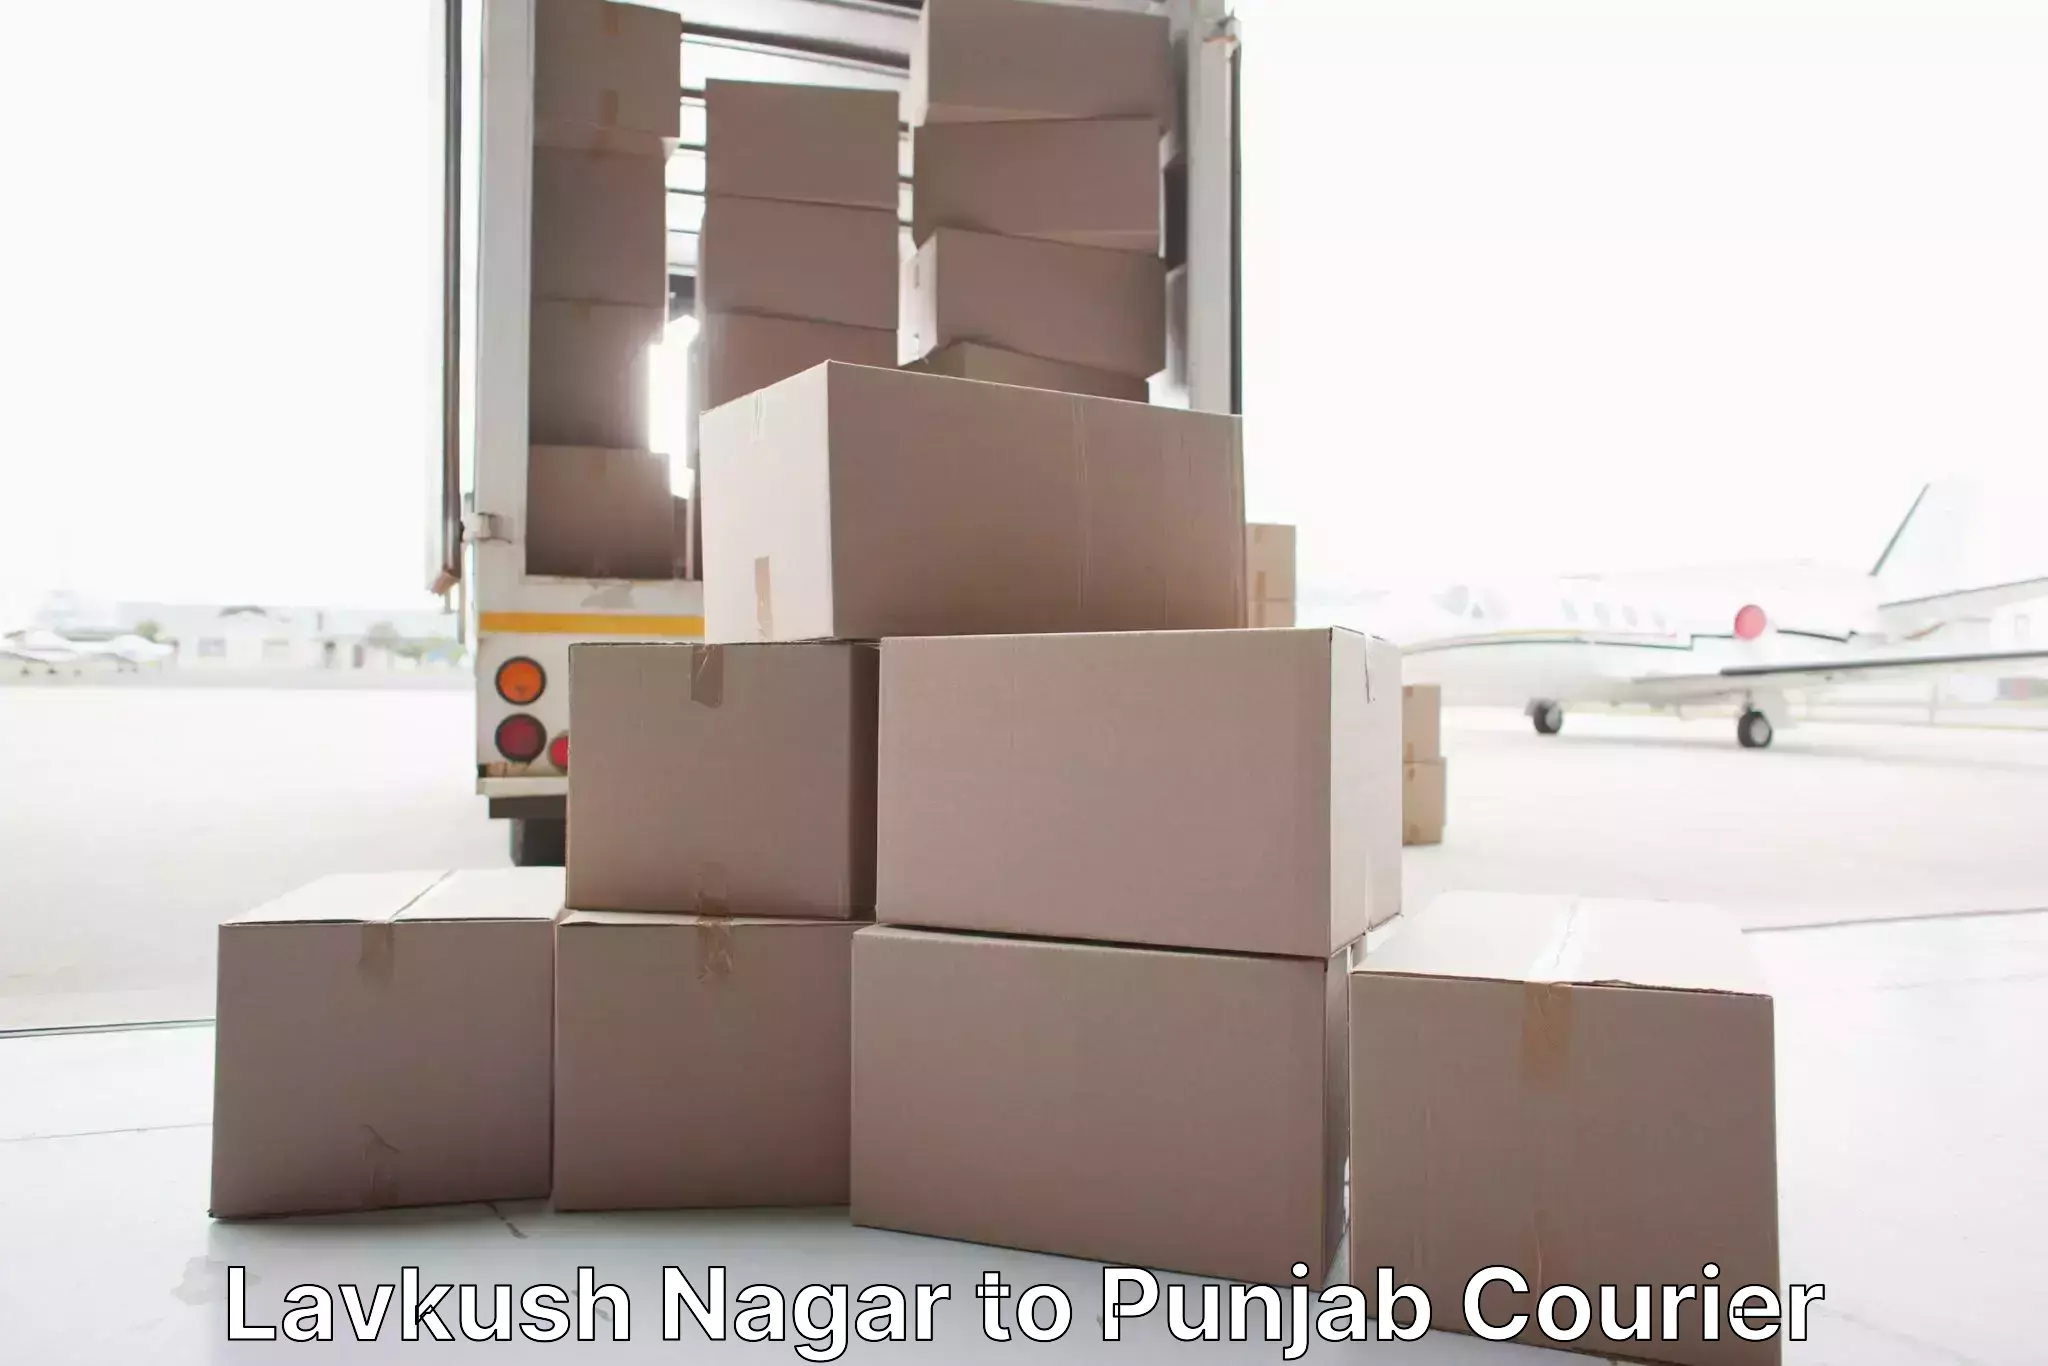 Full-service furniture transport Lavkush Nagar to Punjab